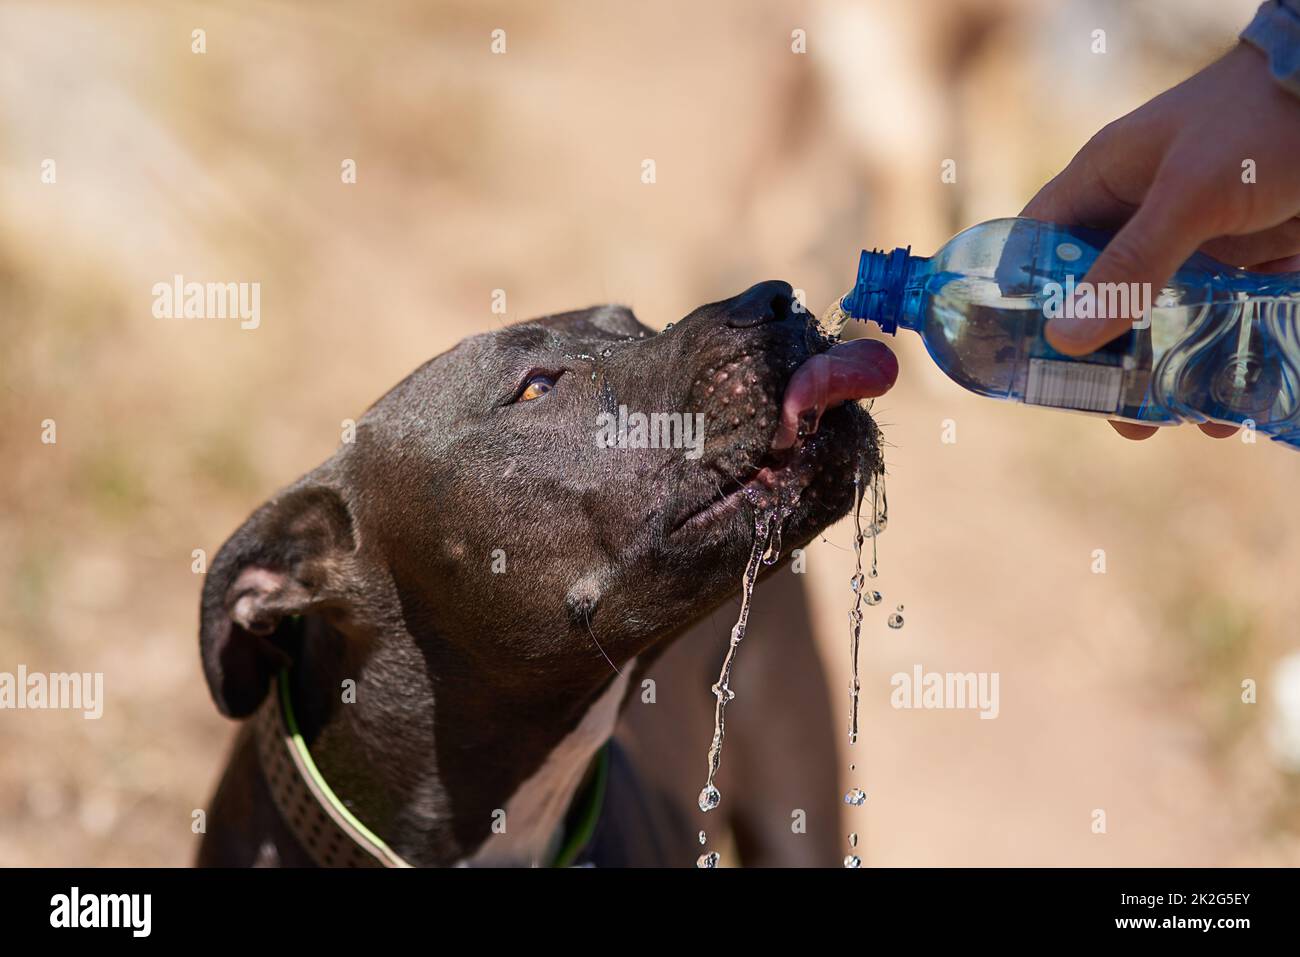 C'est une journée chaude. Plan de récolte d'un chien de l'eau potable de sa bouteille de propriétaires tout en courant dans les bois. Banque D'Images